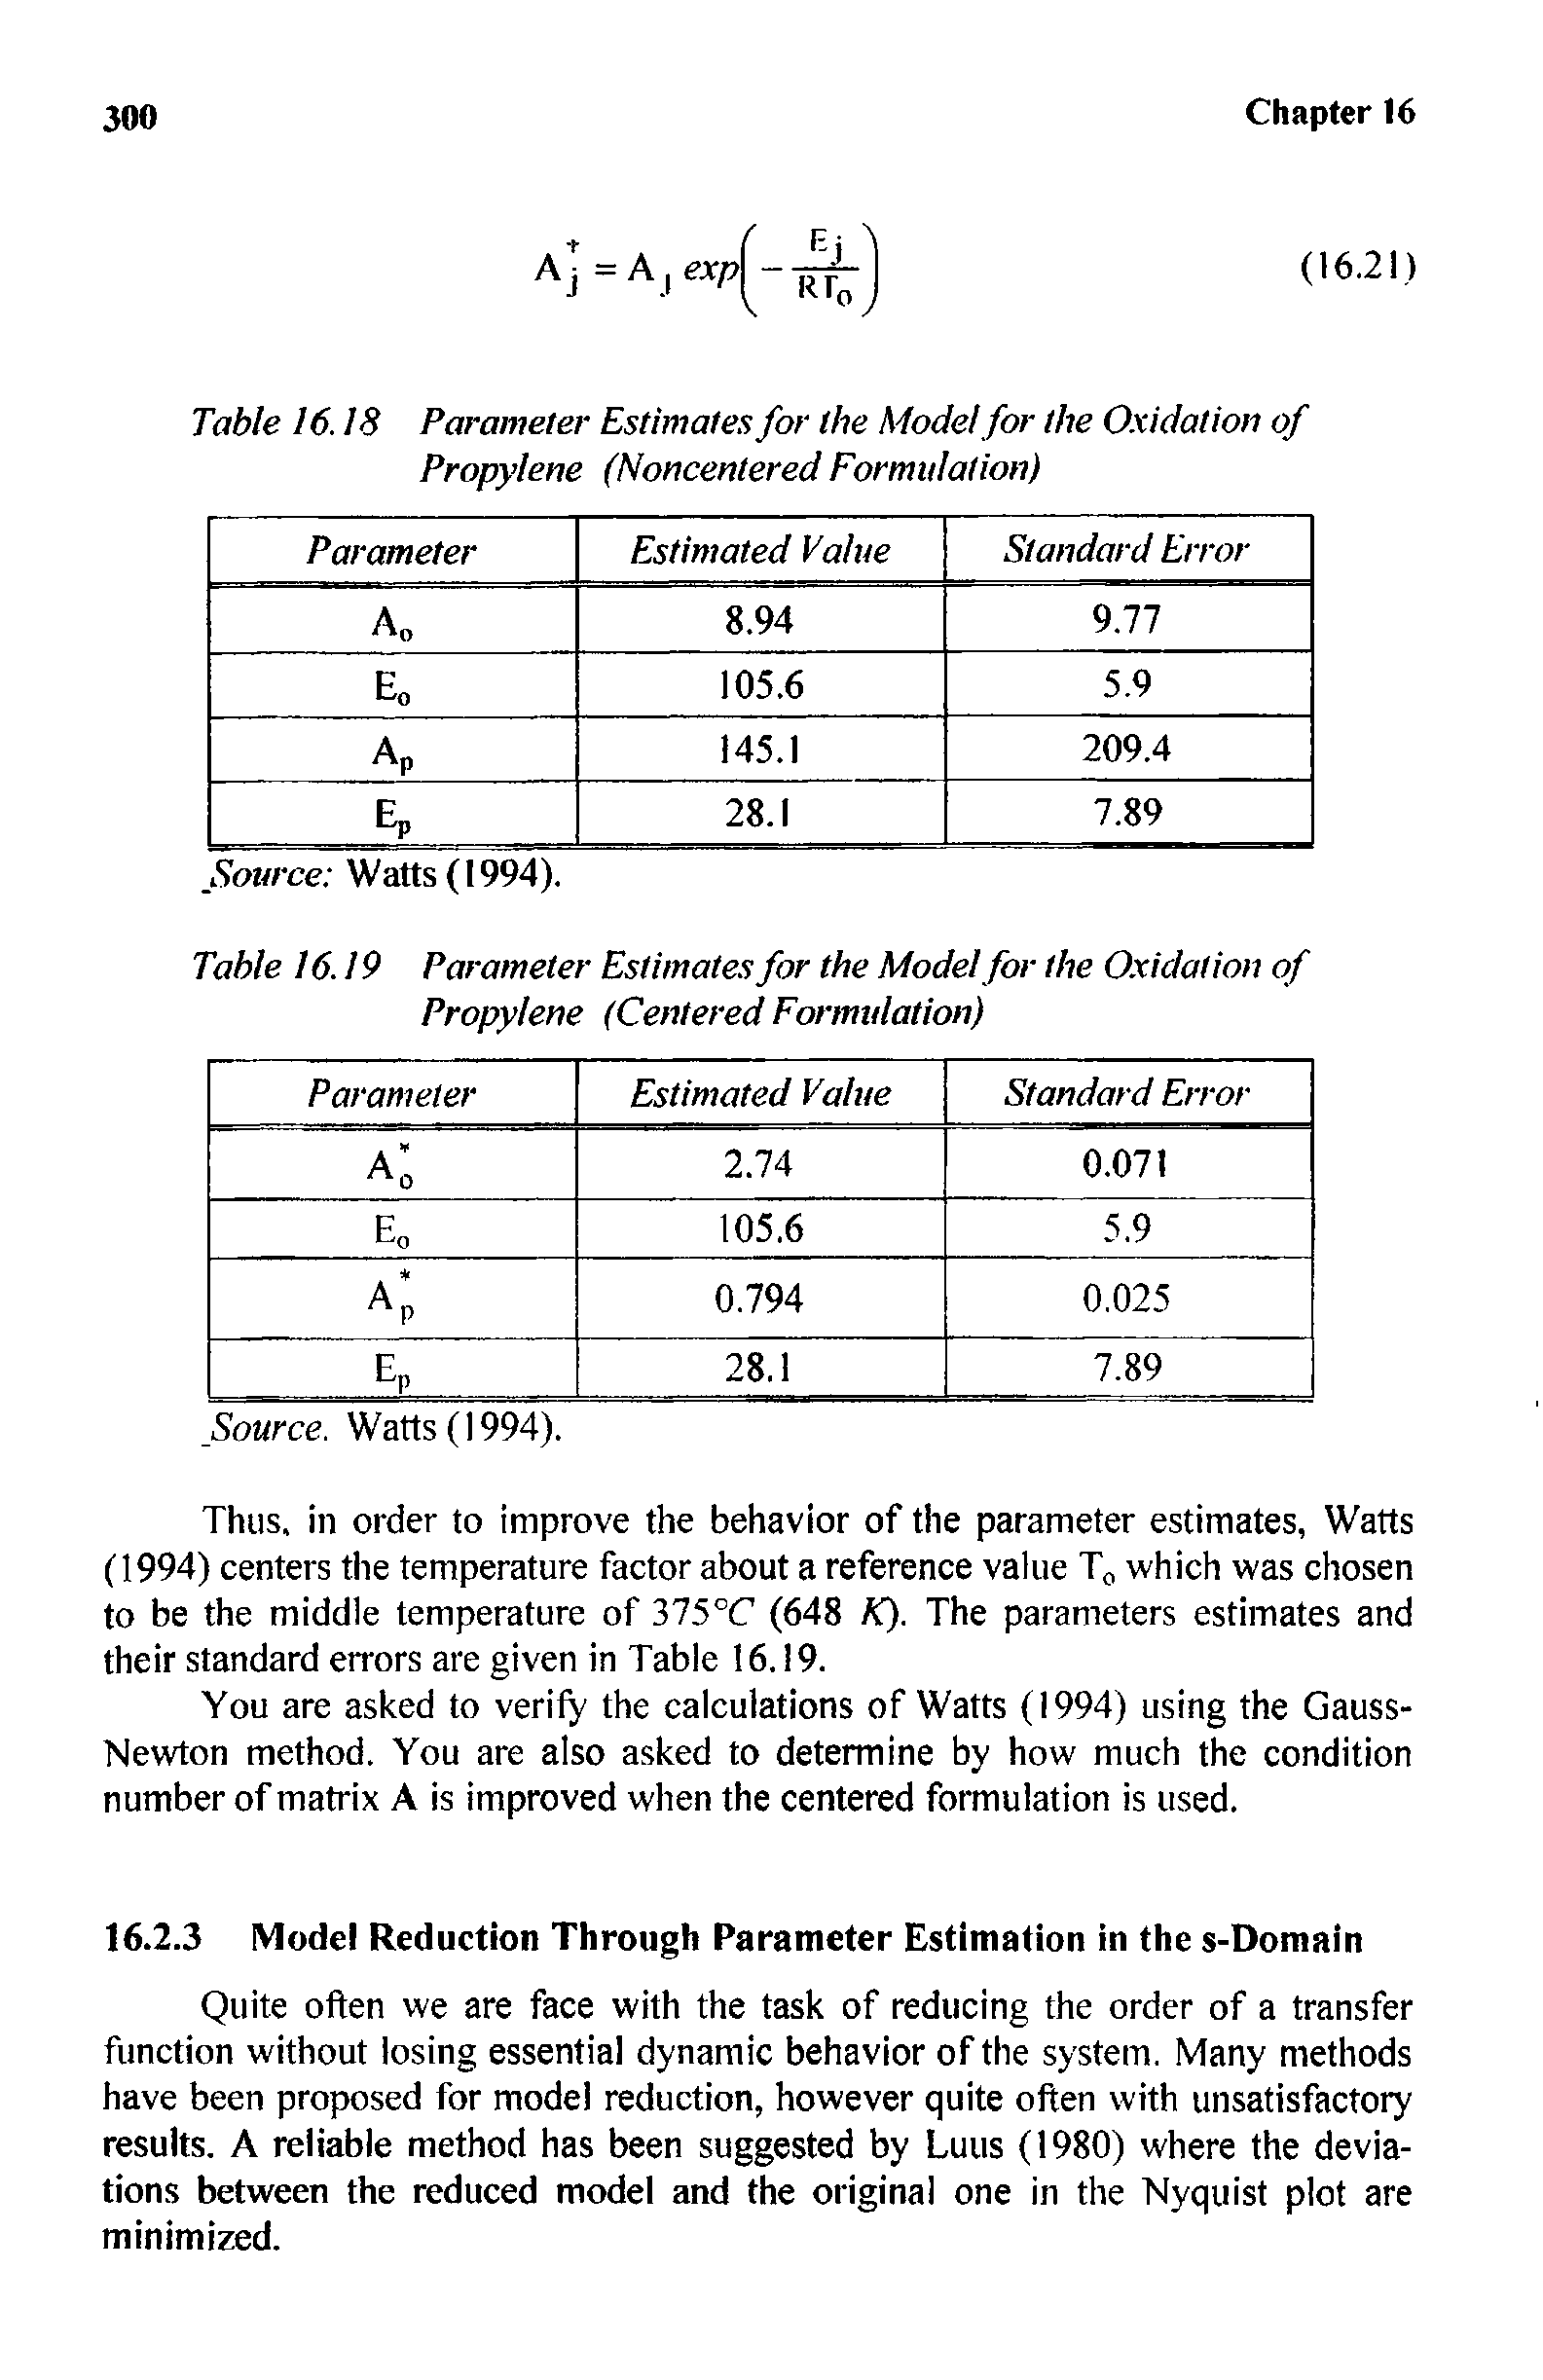 Table 16.19 Parameter Estimates for the Model for the Oxidation of Propylene (Centered Formulation)...